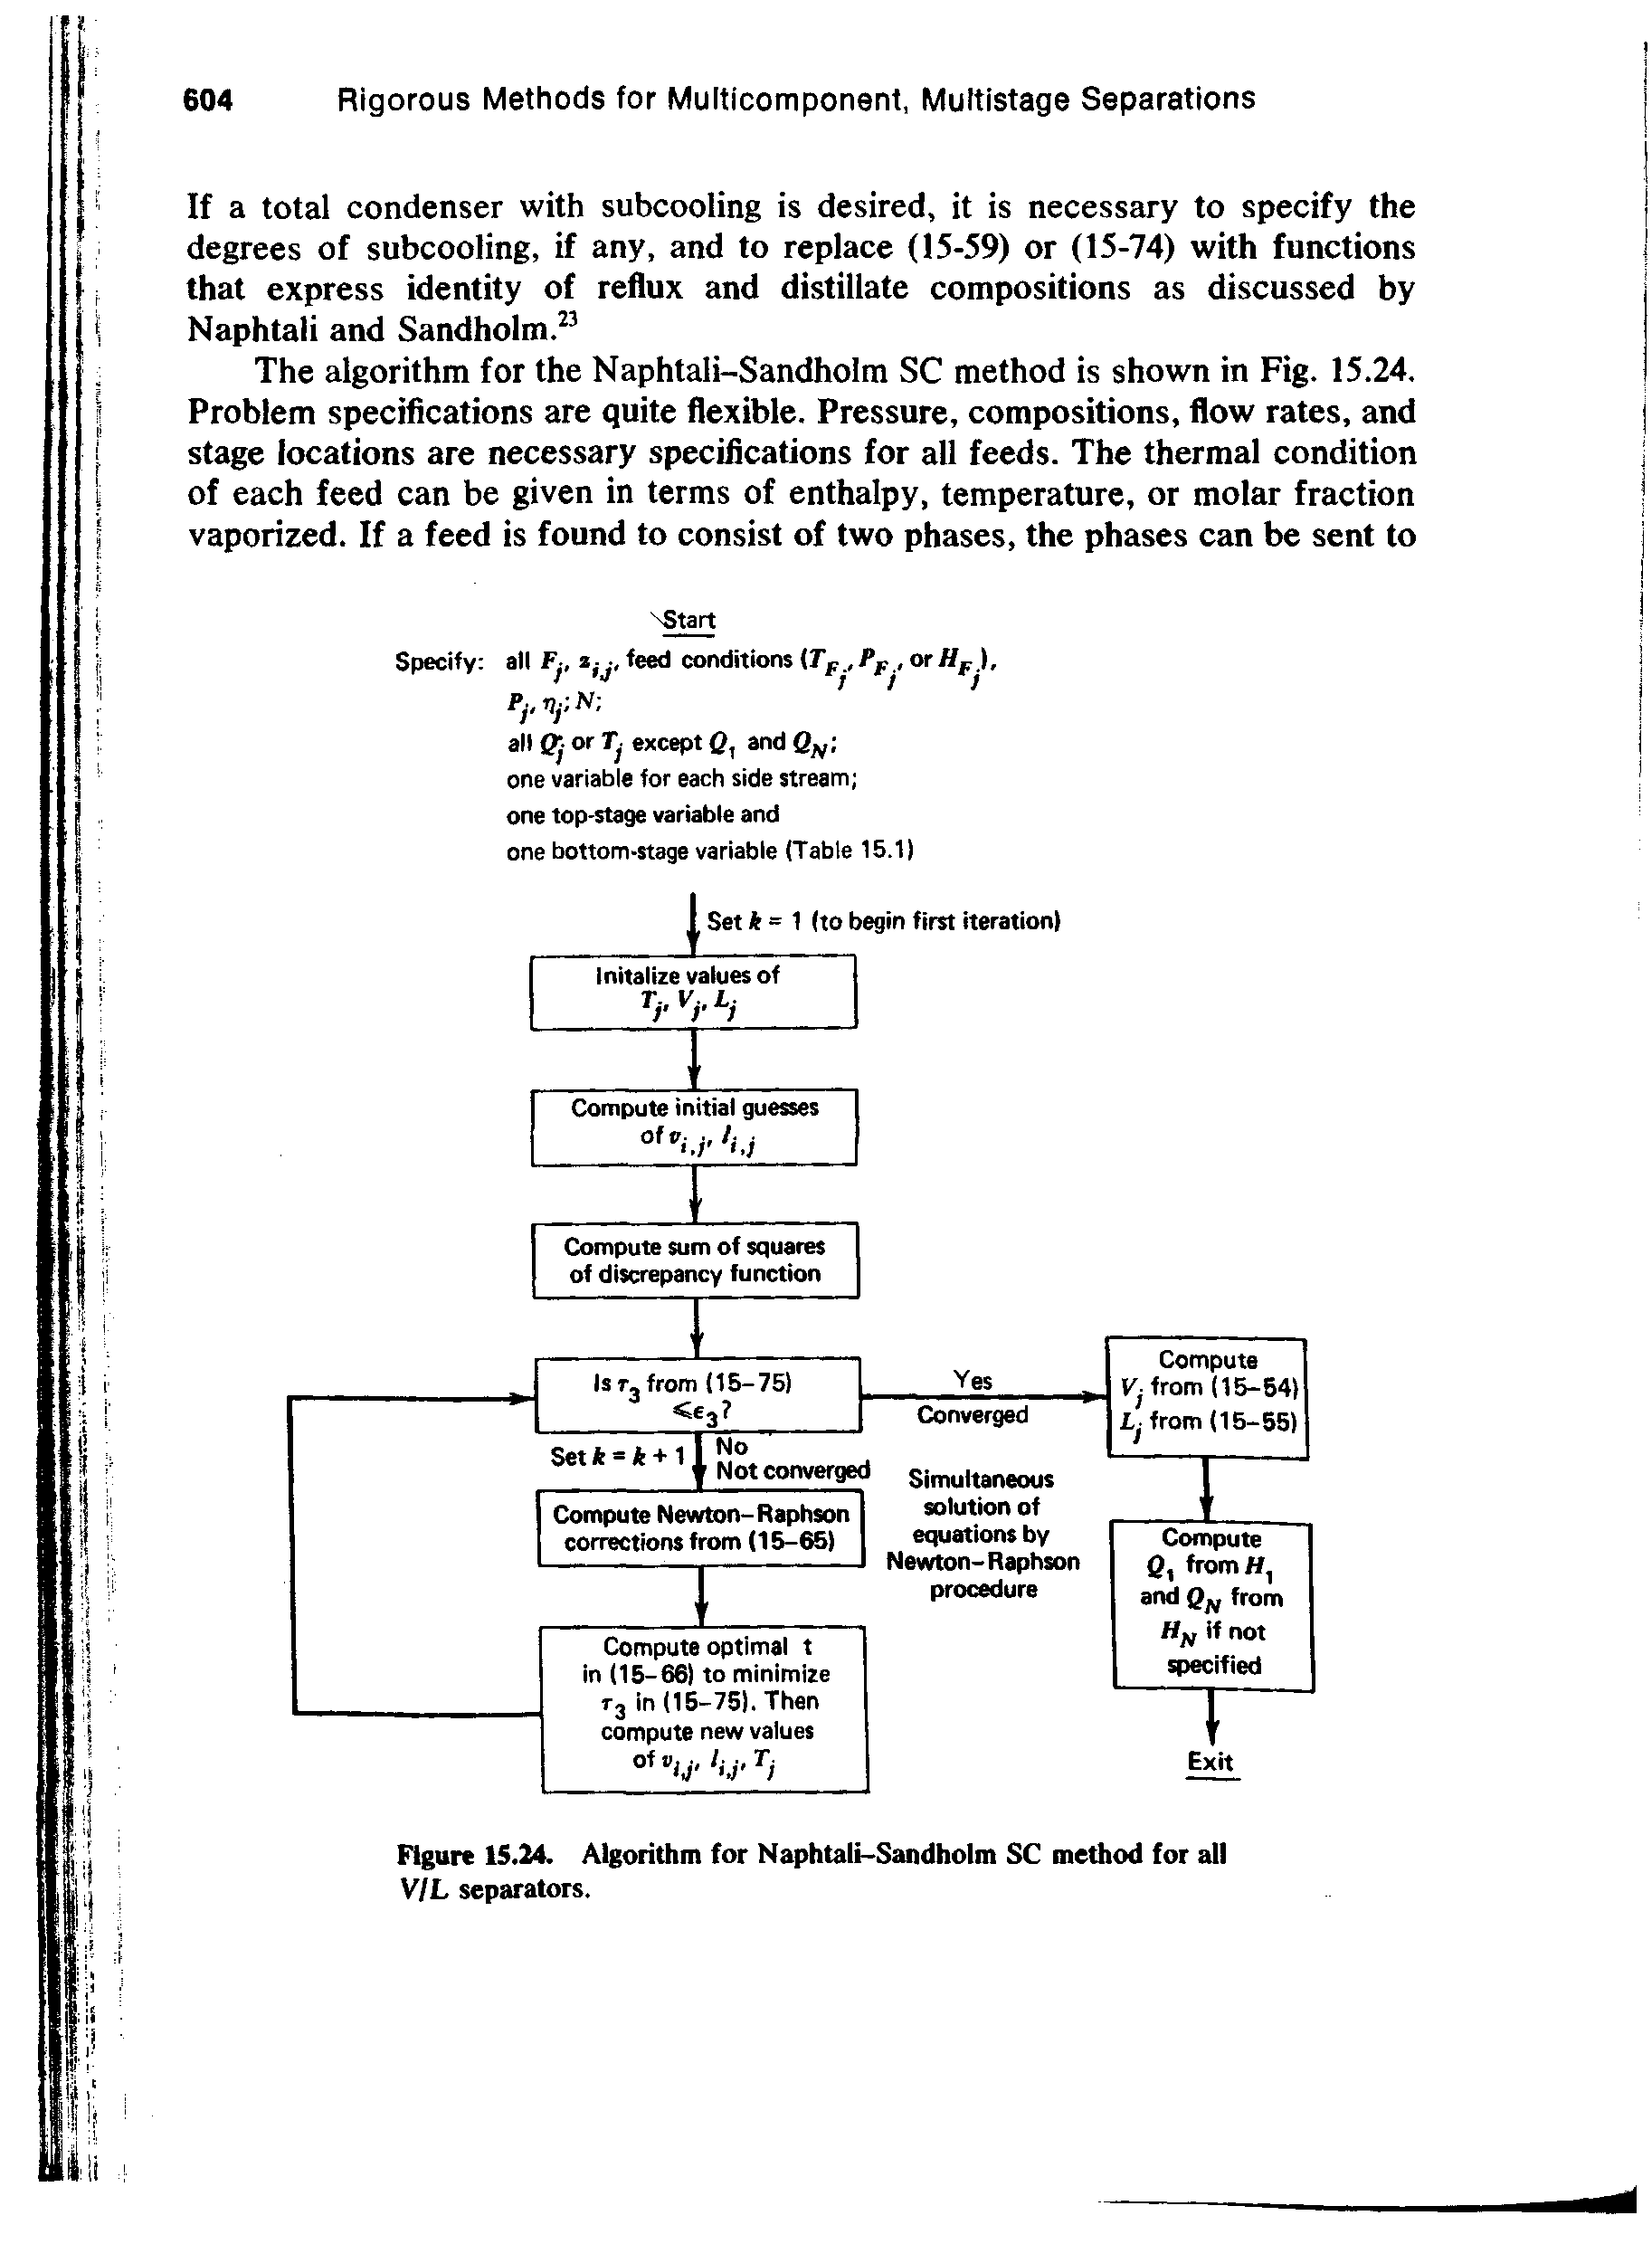 Figure 15.24. Algorithm for Naphtali-Sandholm SC method for all V/L separators.